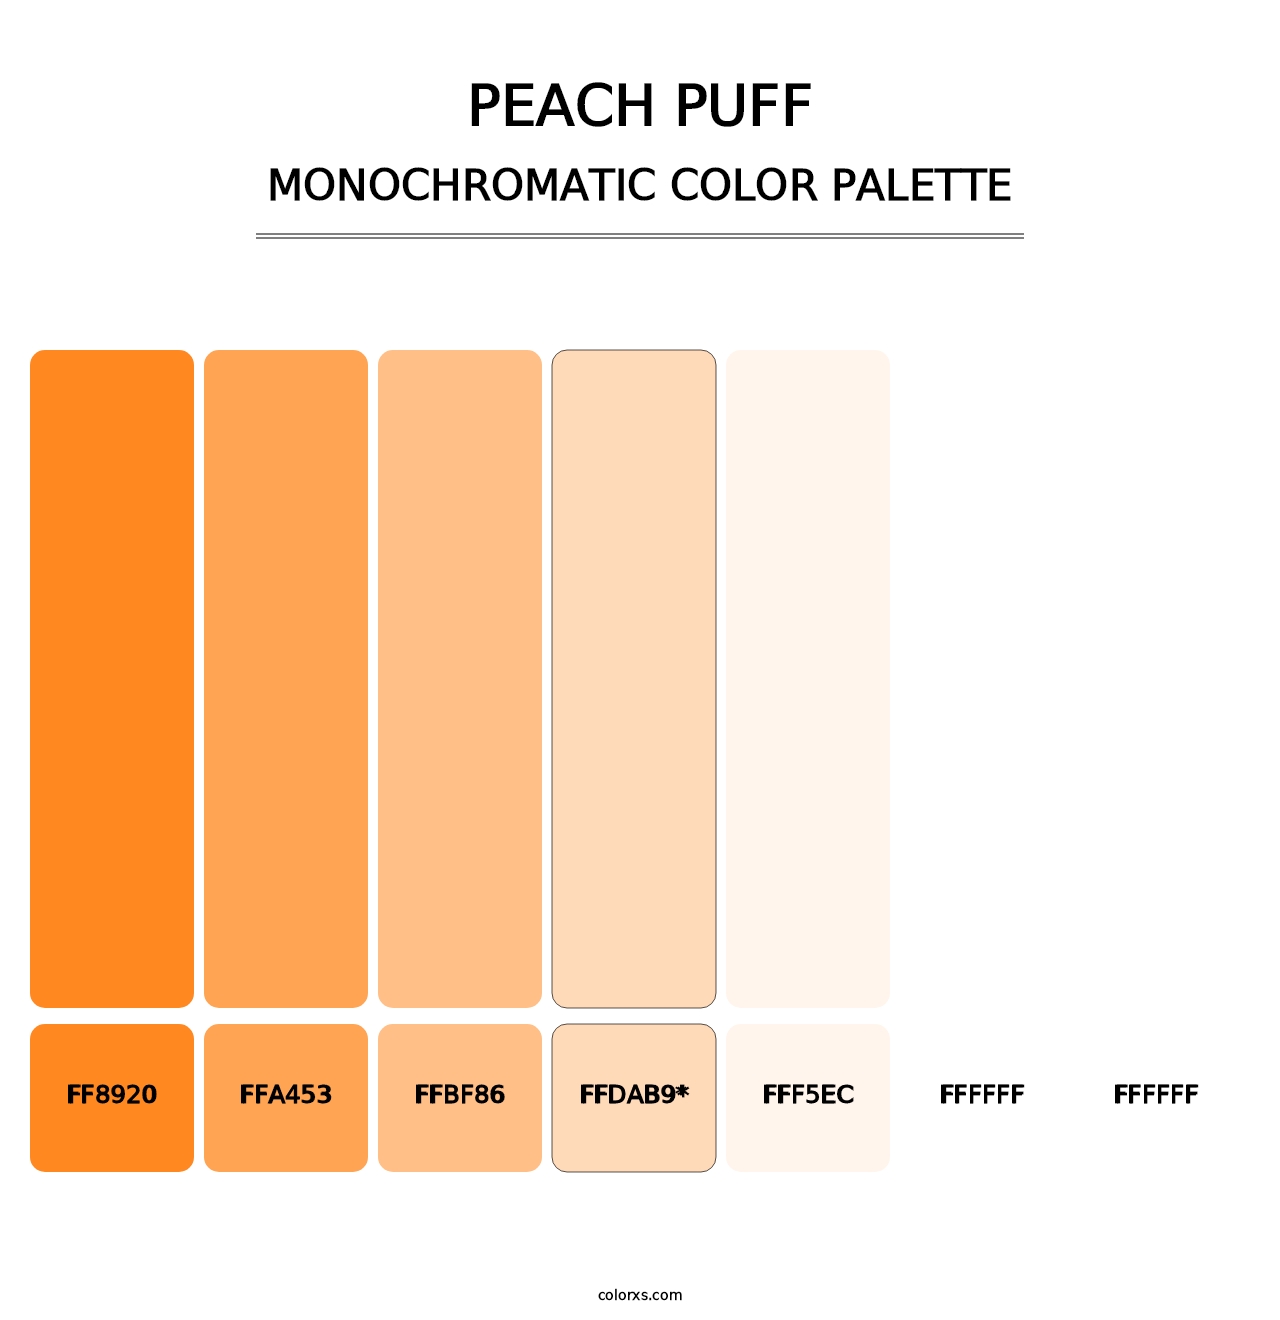 Peach Puff - Monochromatic Color Palette